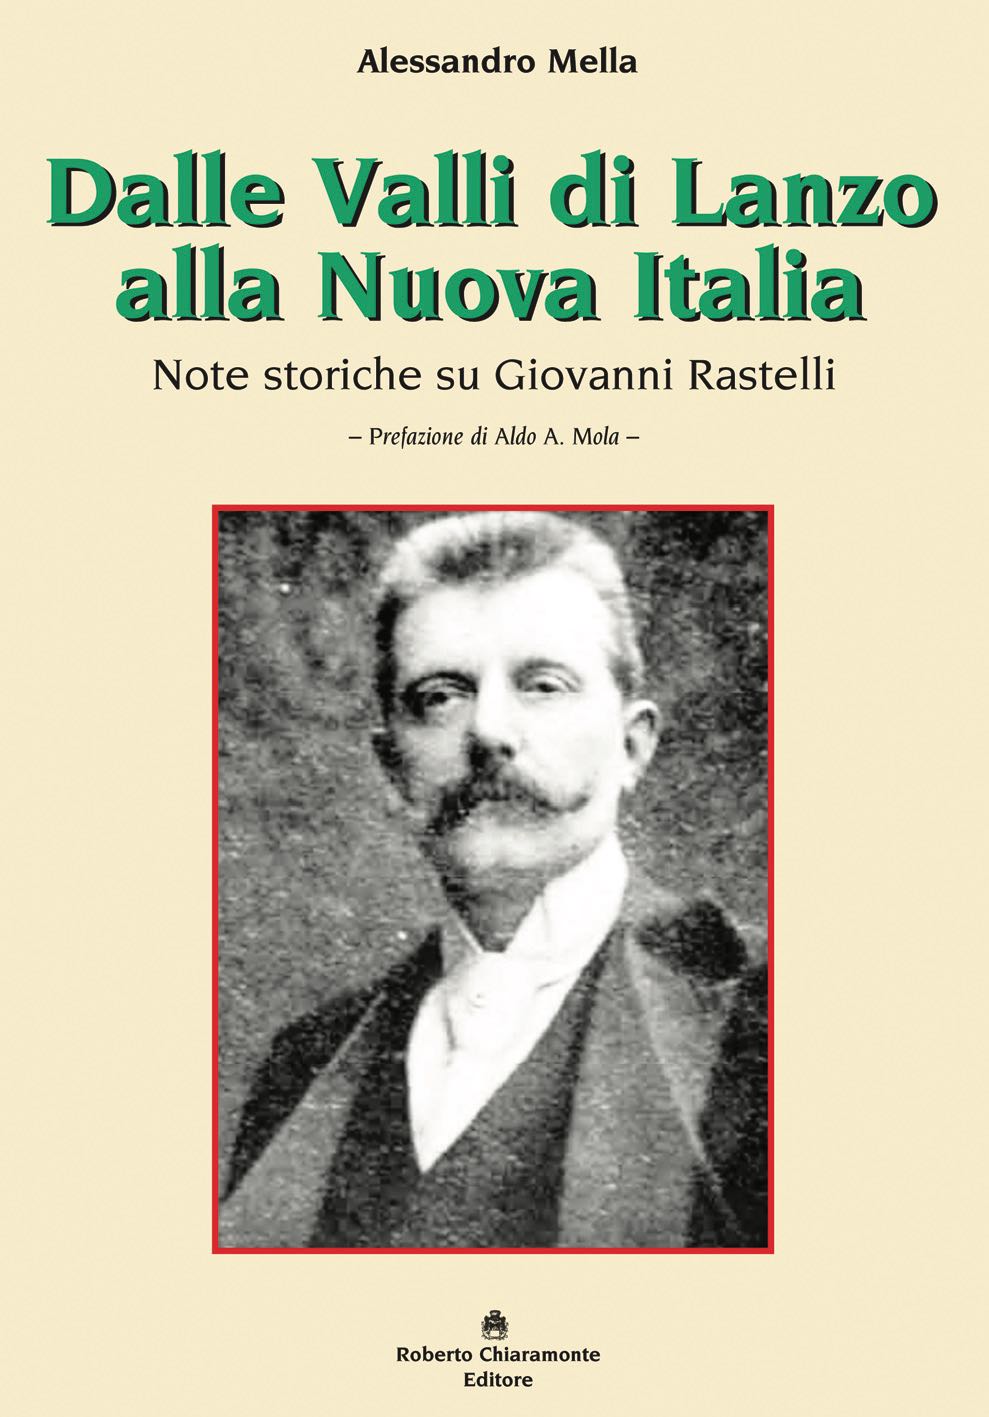 Alessandro Mella  “Dalle Valli di Lanzo alla Nuova Italia” (Ed.Chiaramonte)